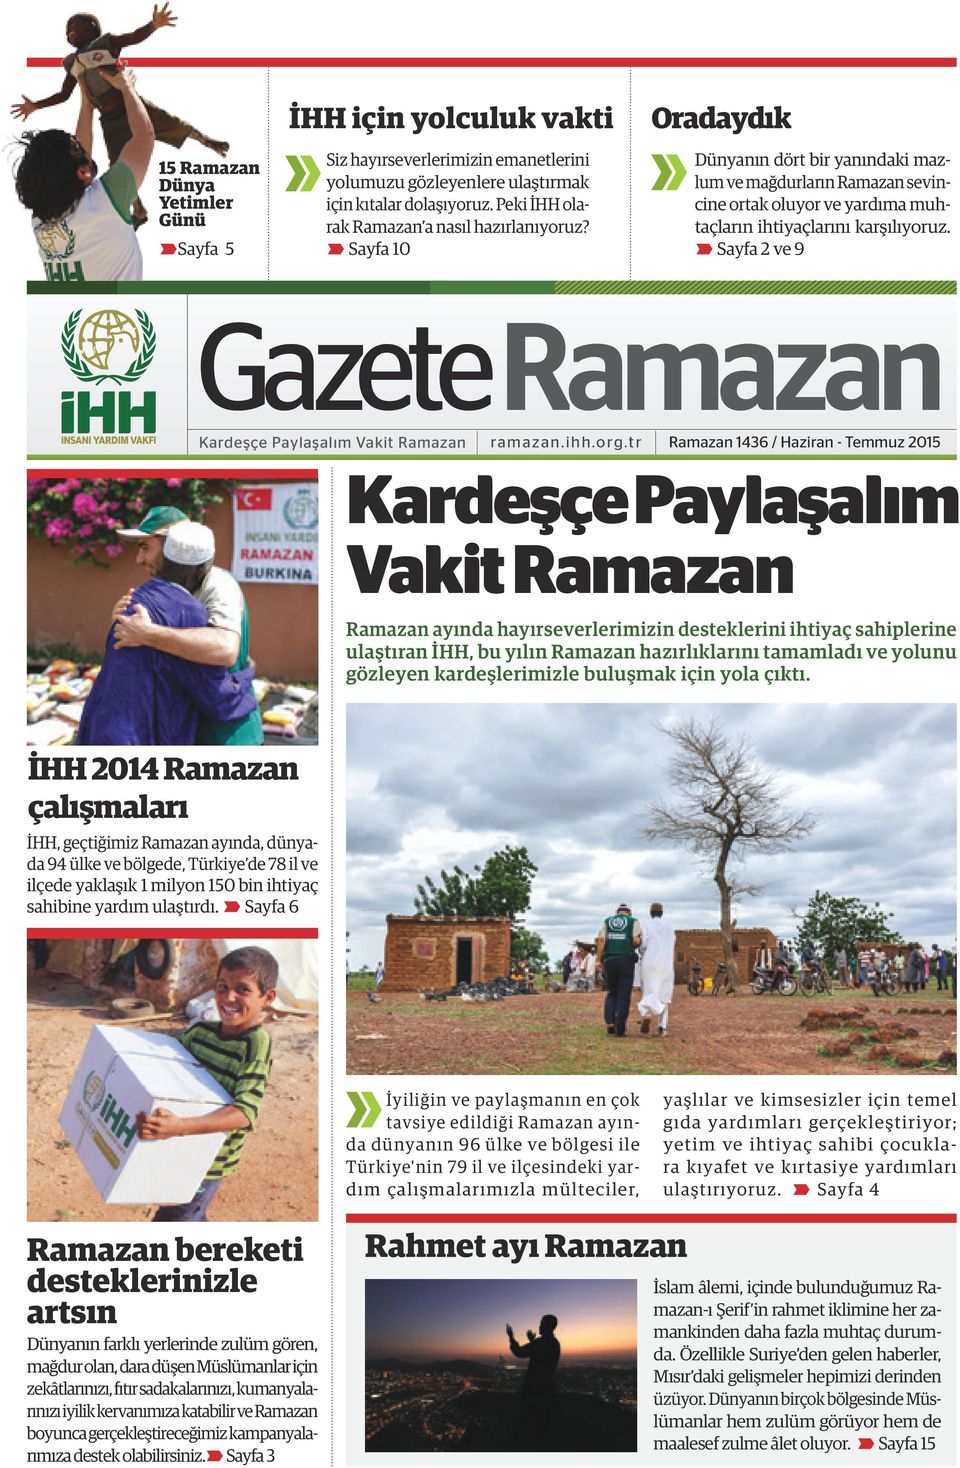 Sayfa 2 ve 9 Gazete Ramazan Kardeşçe Paylaşalım Vakit Ramazan ramazan.ihh.org.